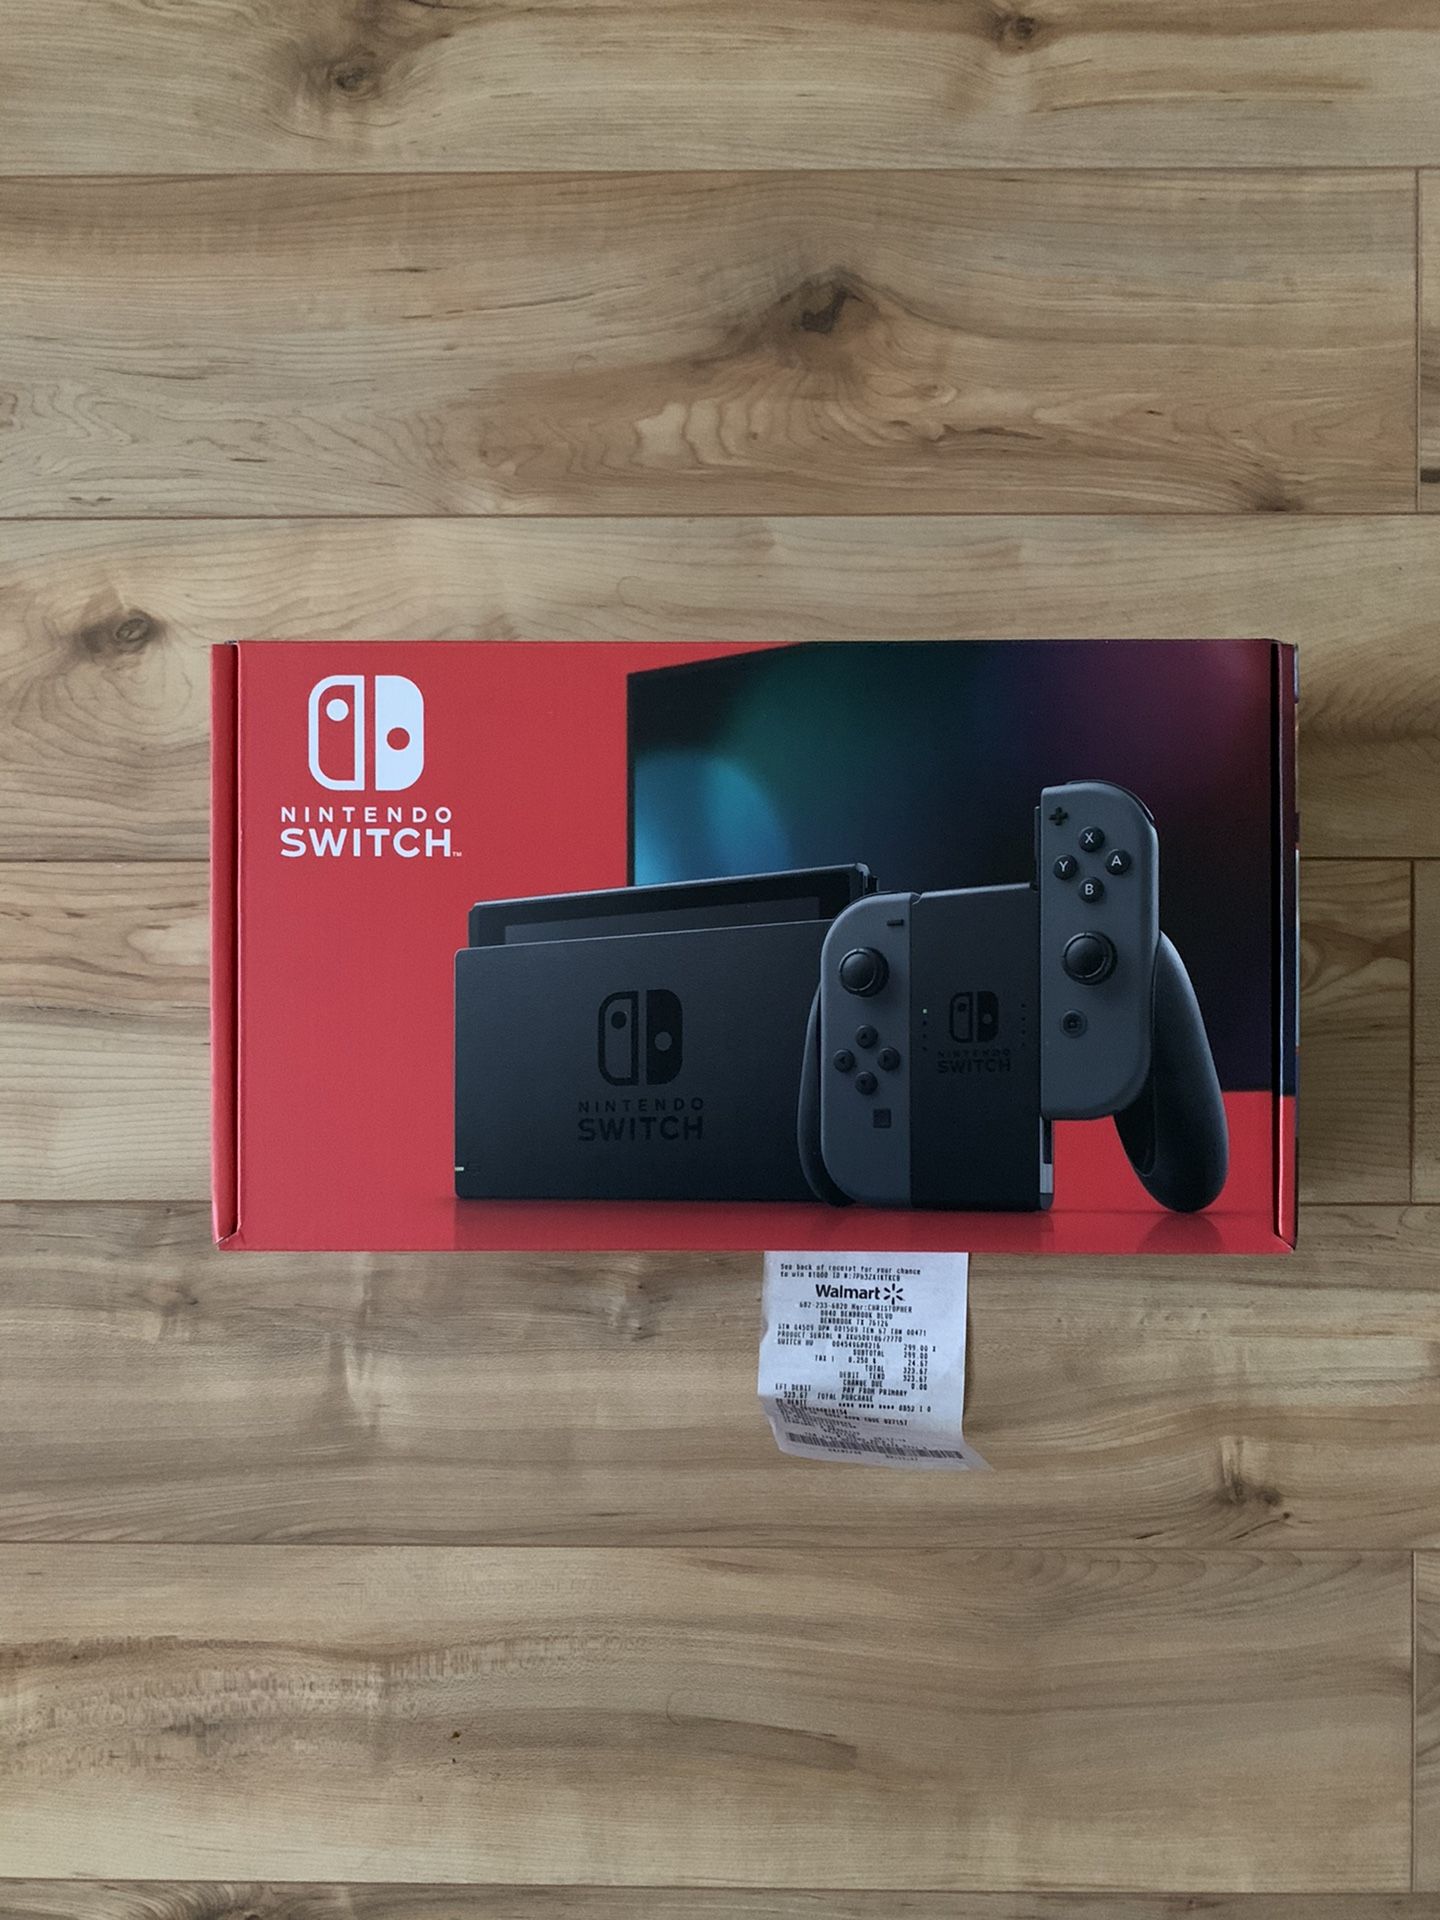 Nintendo Switch With Grey Joy-Con